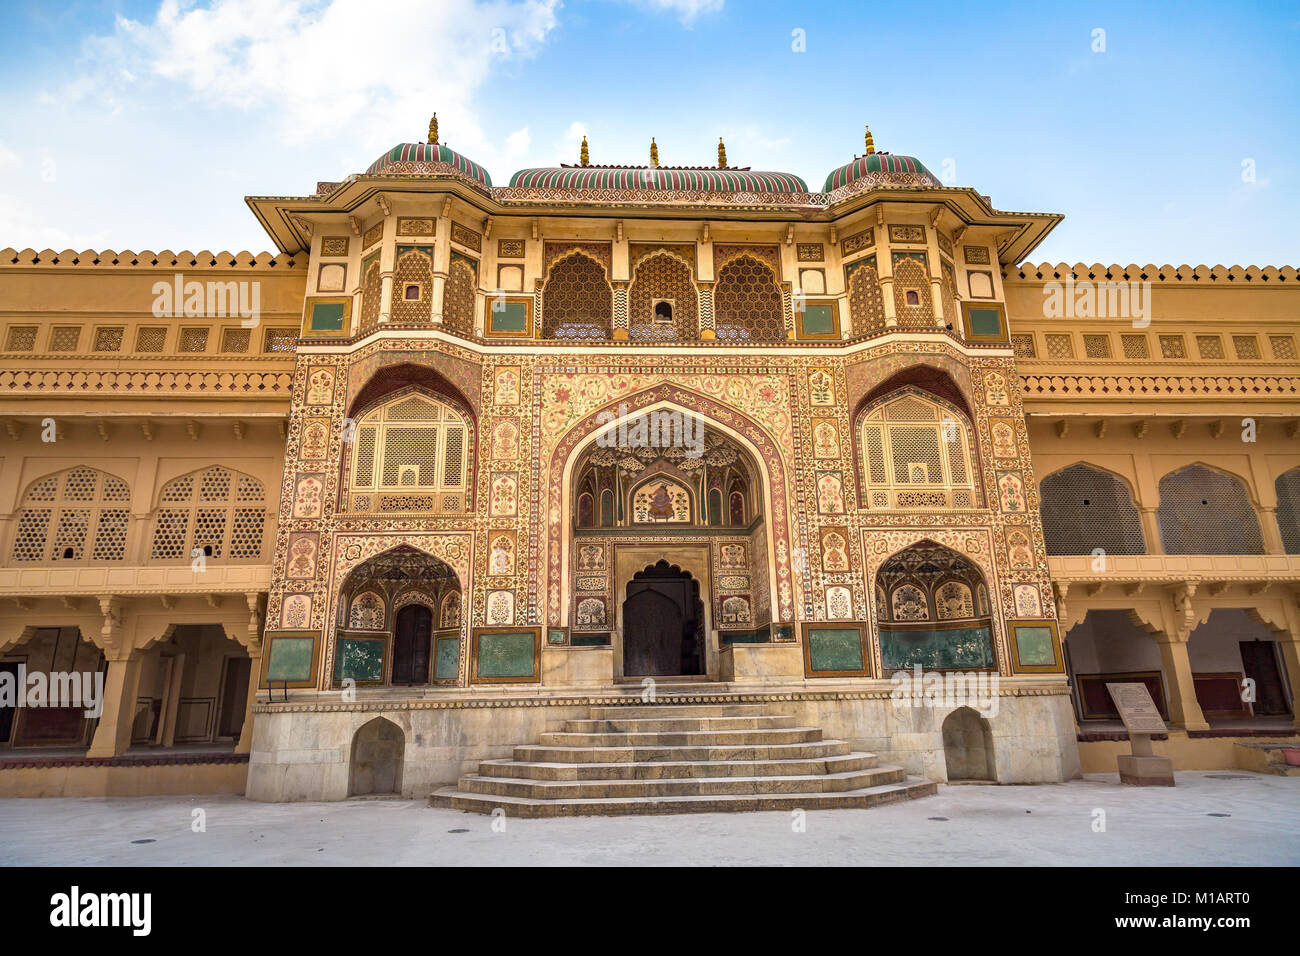 Amer Fort Jaipur Rajasthan Haupteingang Gateway mit aufwändigem Artwork und Säulen. Amber Fort ist ein UNESCO-Weltkulturerbe. Stockfoto